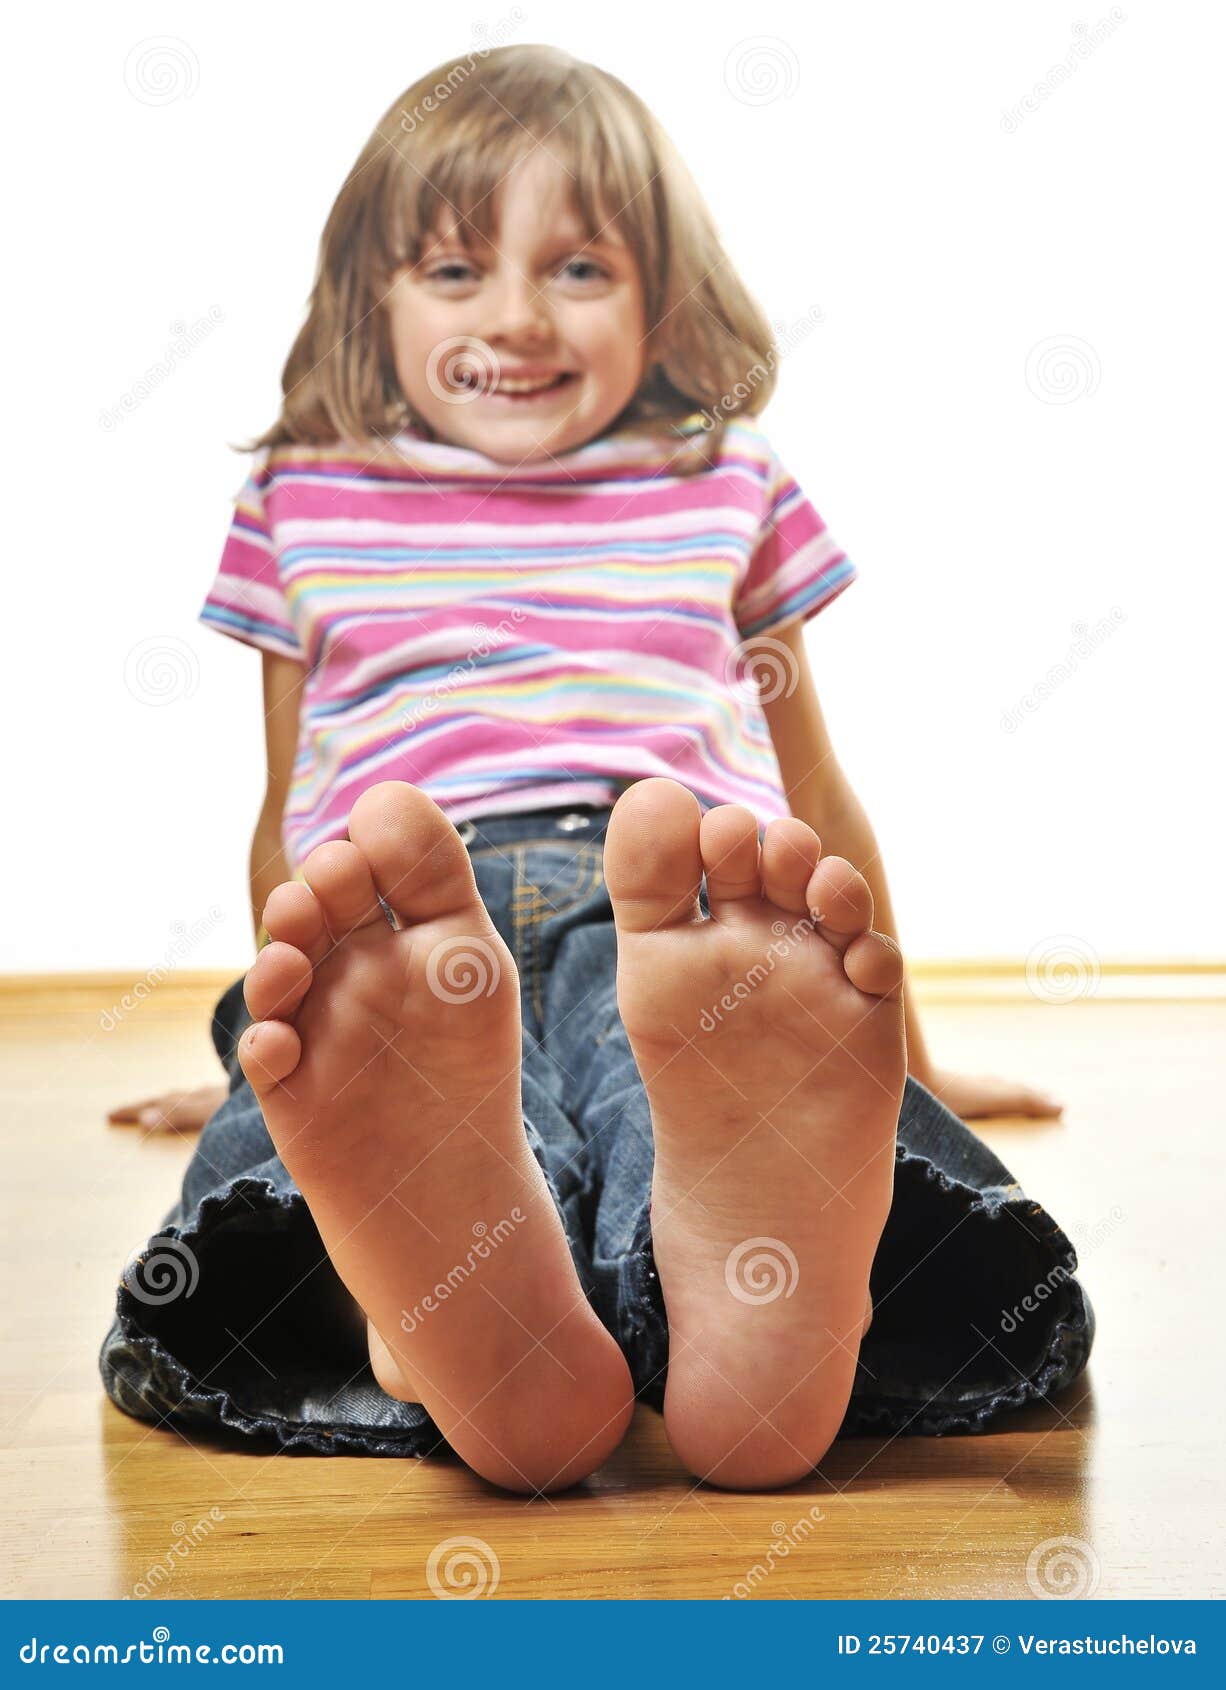 https://thumbs.dreamstime.com/z/little-girl-sitting-wooden-floor-25740437.jpg